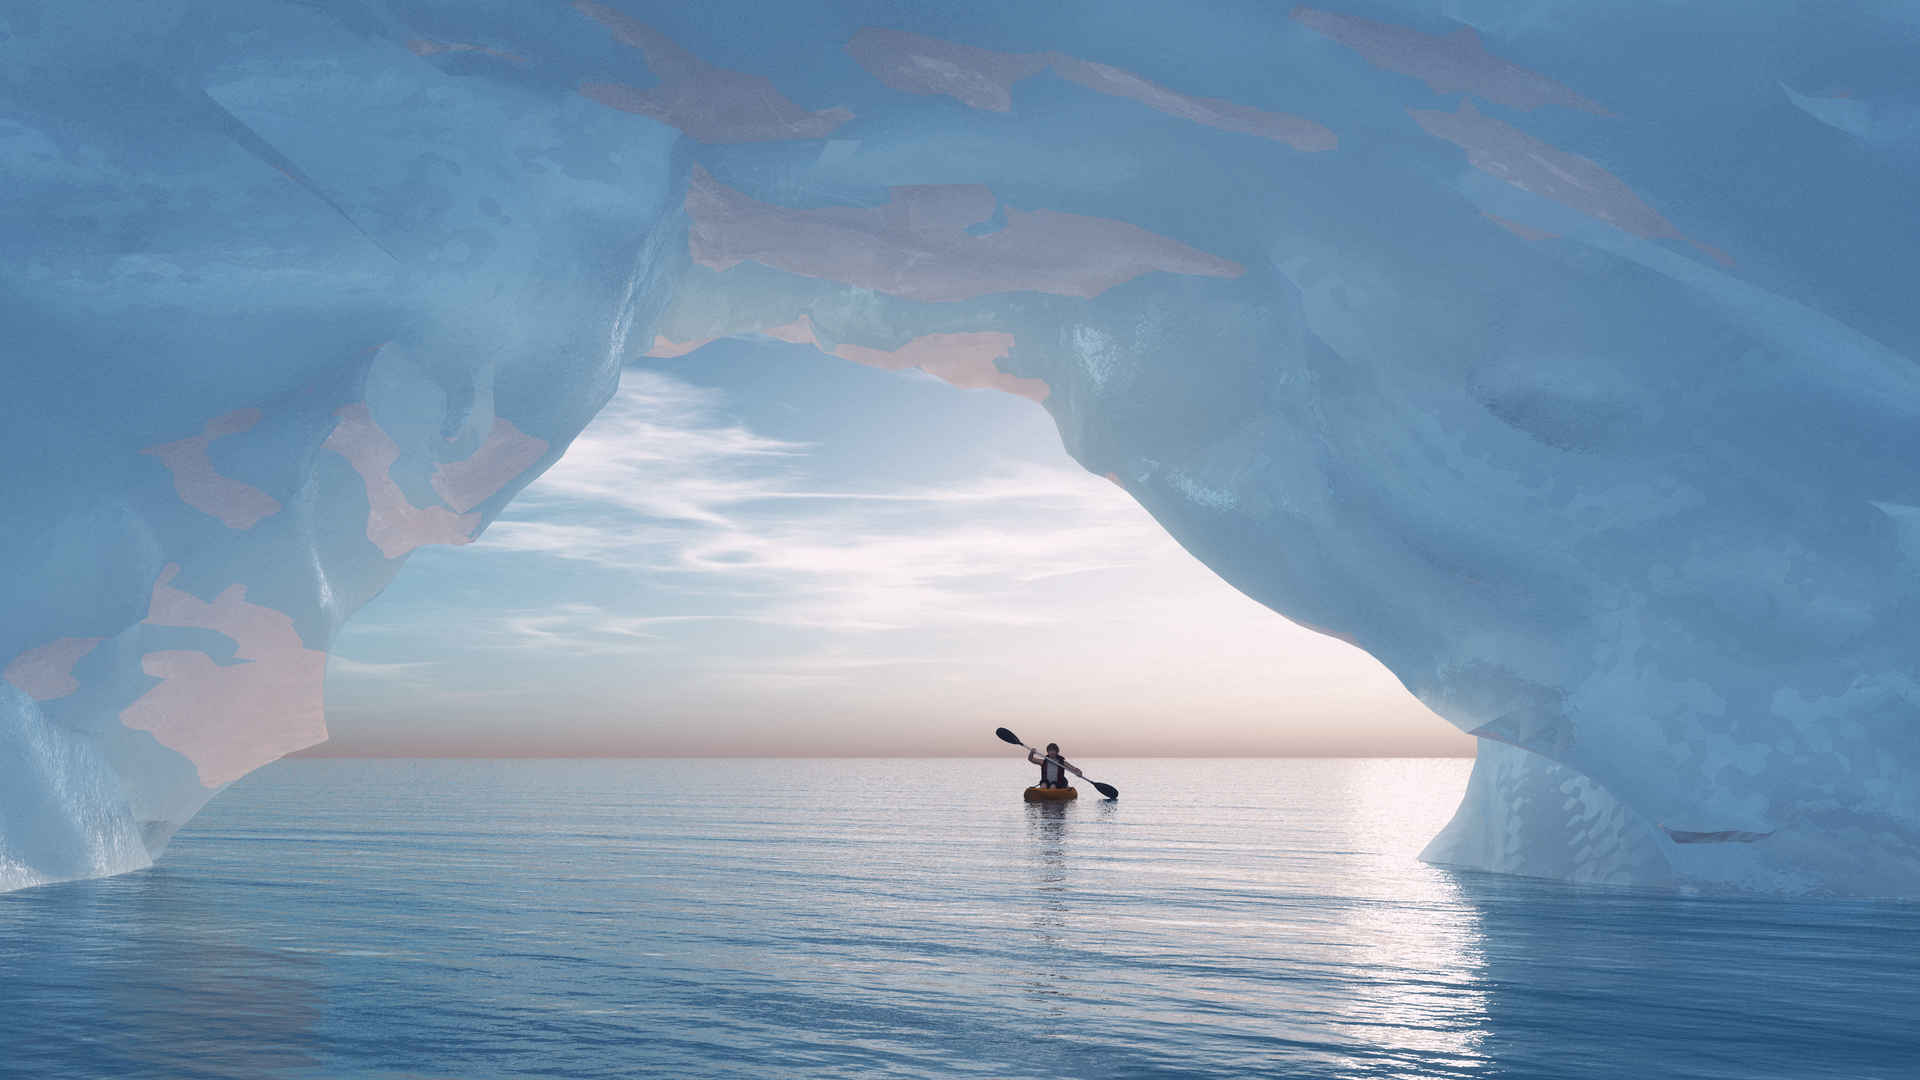 冰河一艘船孤独壁纸